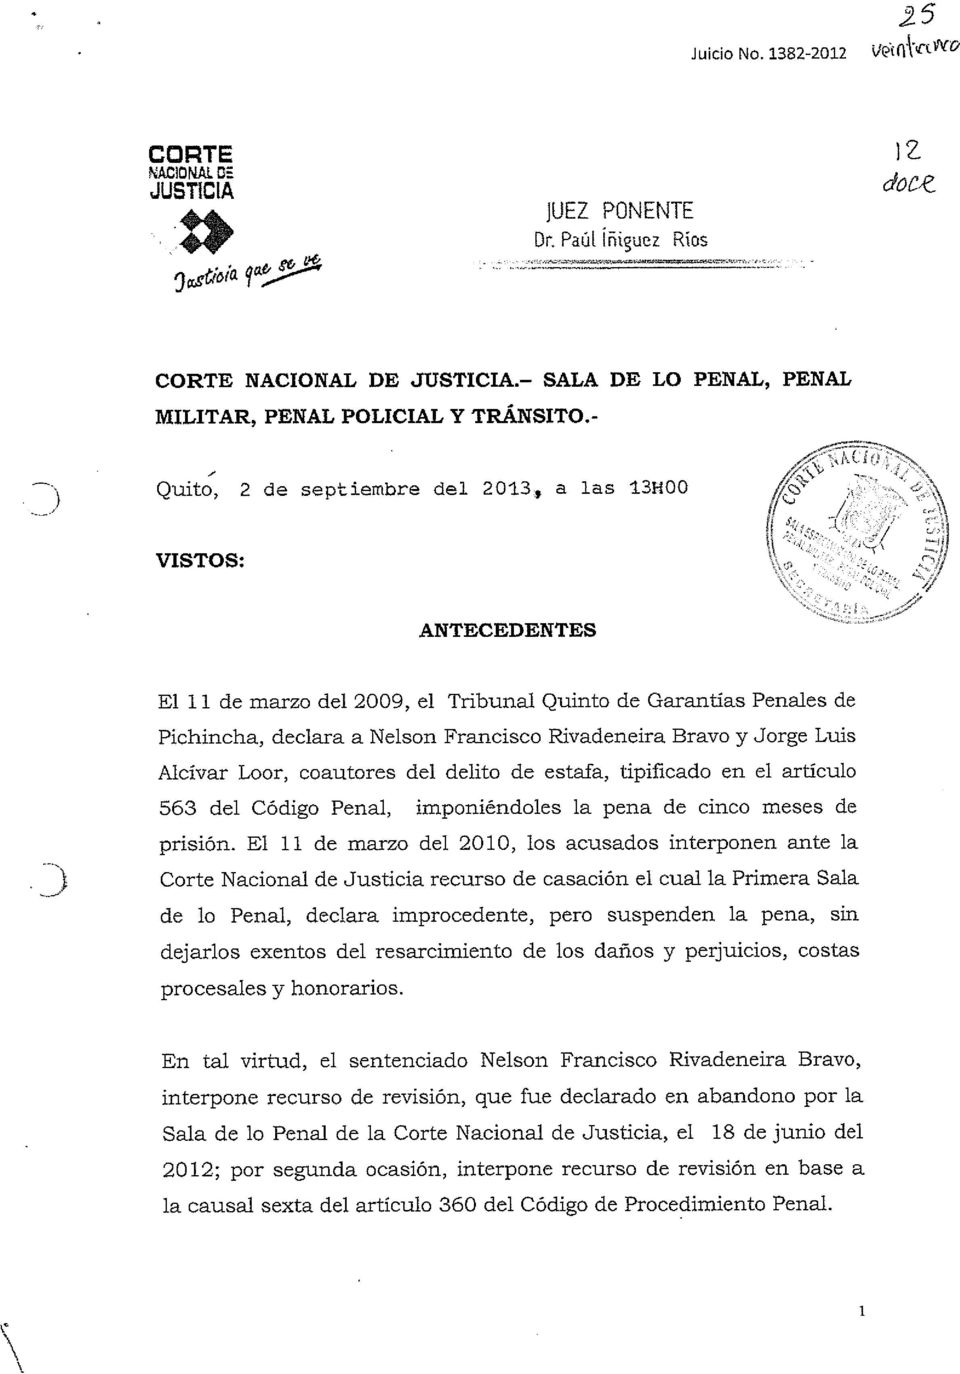 Luis Alcívar Loor, coautores del delito de estafa, tipificado en el artículo 563 del Código Penal, imponiéndoles la pena de cinco meses de prisión. El 1.